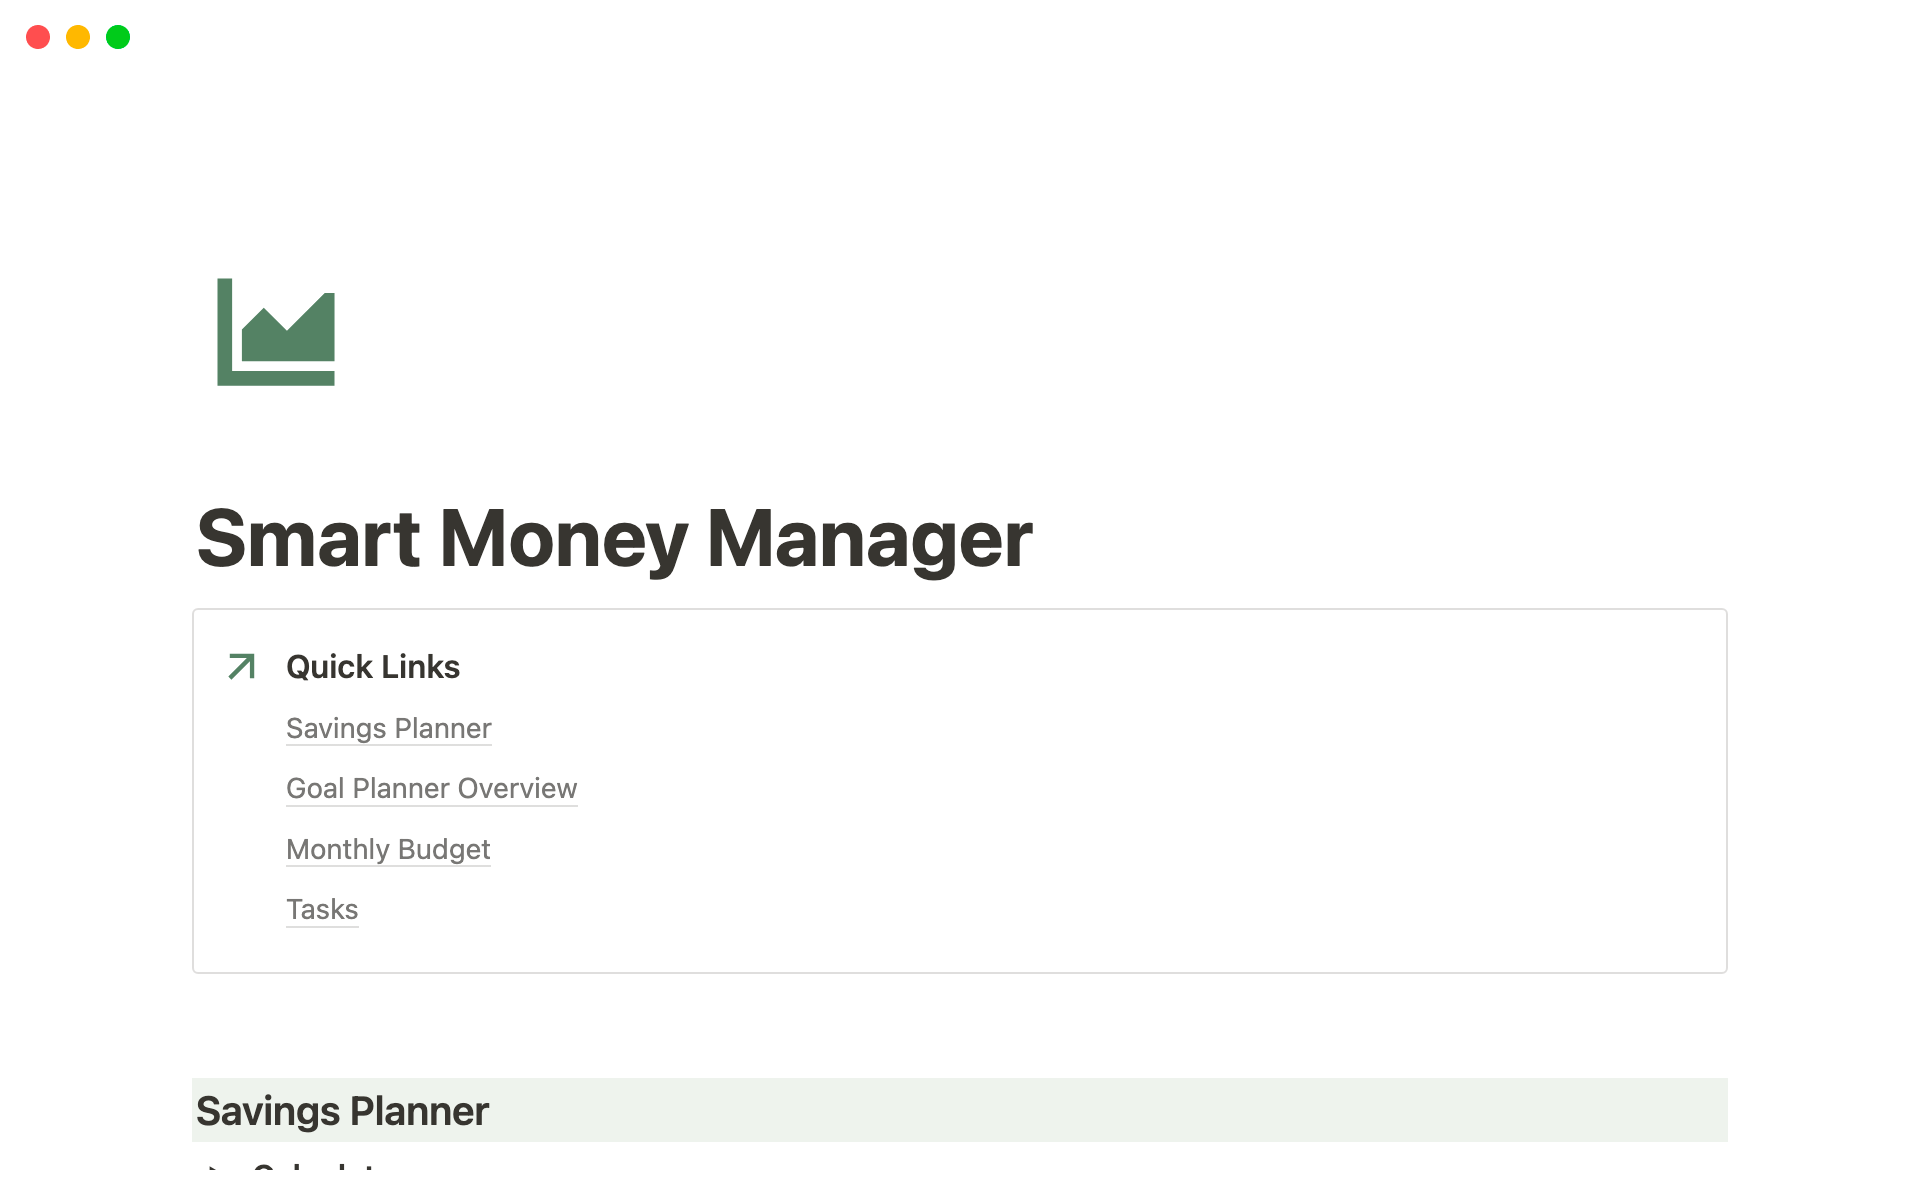 Uma prévia do modelo para Smart Money Manager